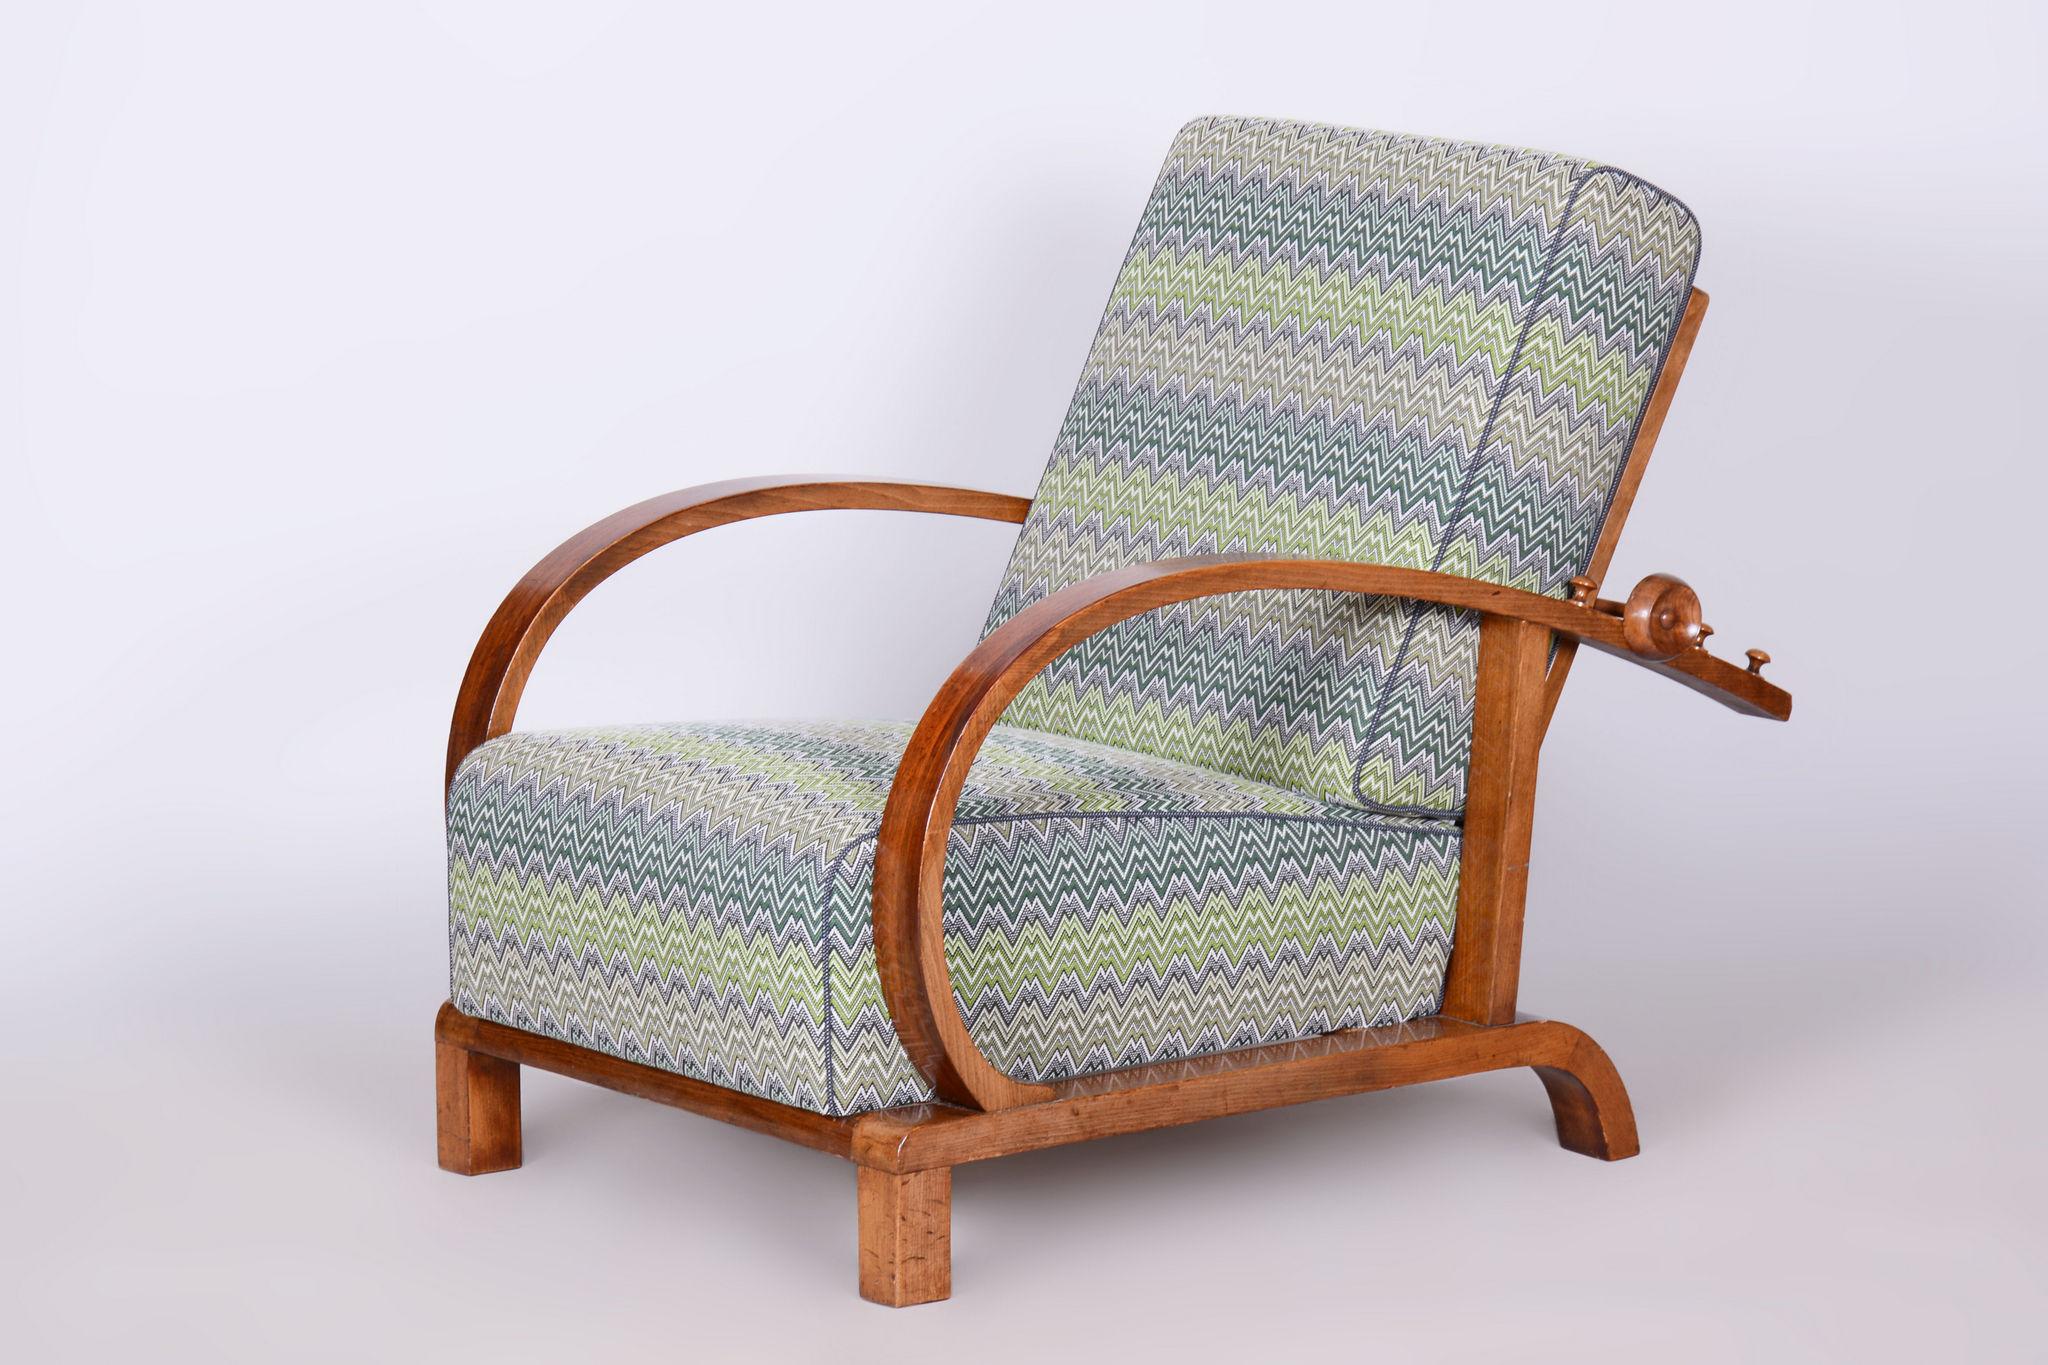 Conçu par Jindrich Halabala, un designer de renom reconnu pour avoir inauguré la production de meubles en série dans sa Tchécoslovaquie natale.								

Fabriqué par Up&Up, un célèbre fabricant et revendeur de meubles tchécoslovaques basé à Brno.